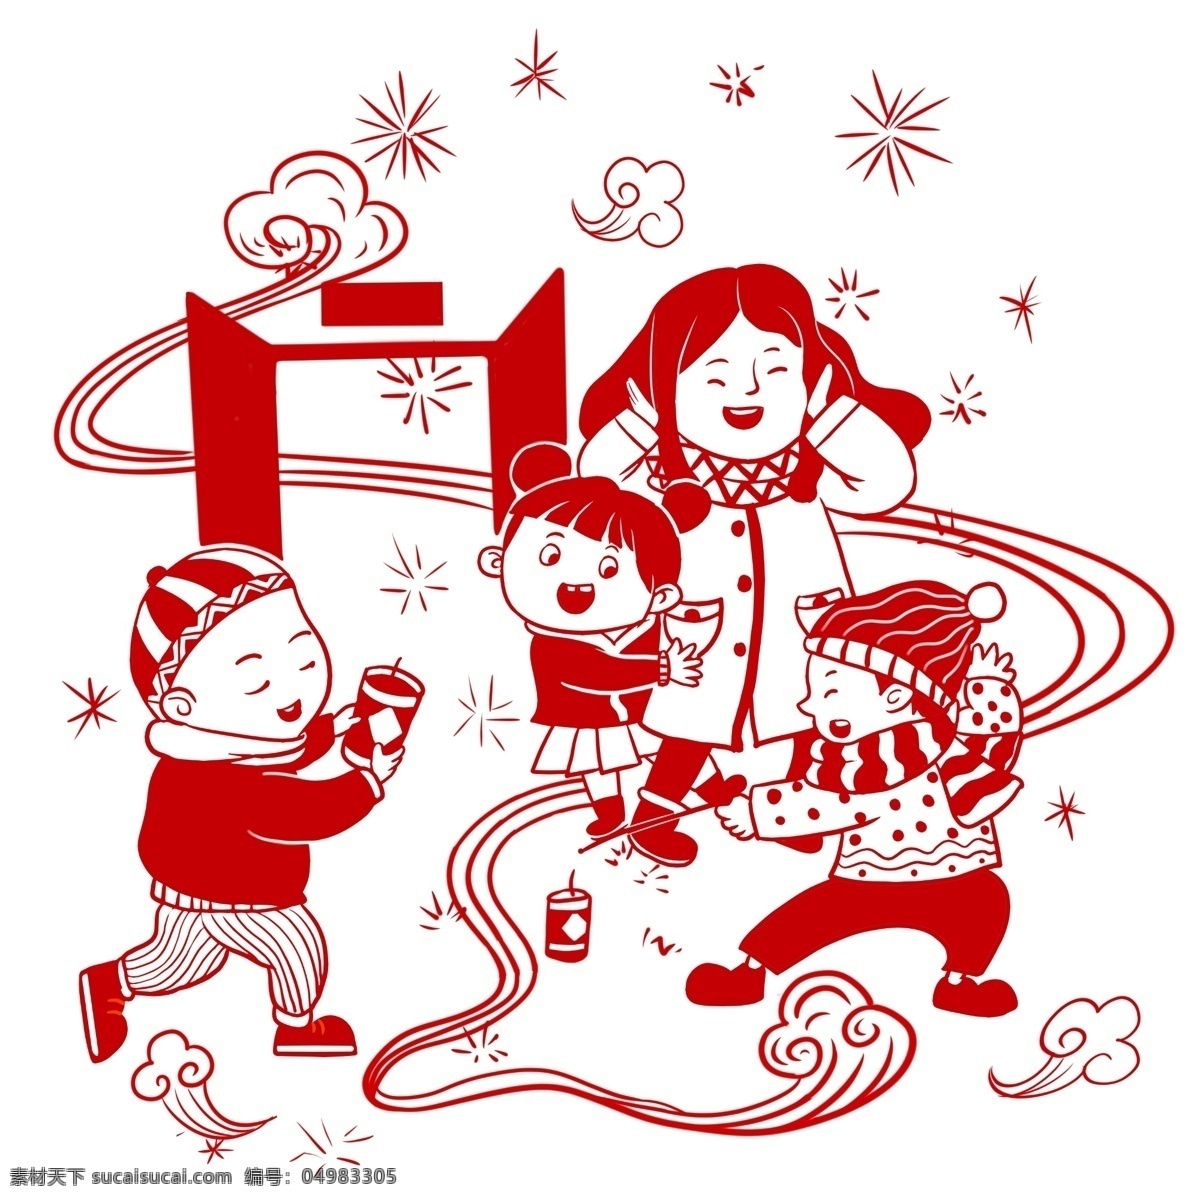 节日 放 鞭炮 剪纸 插画 新年 吉祥 幸福 高兴 红色 喜庆 快乐 孩子 放鞭炮 中国风 手绘 卡通